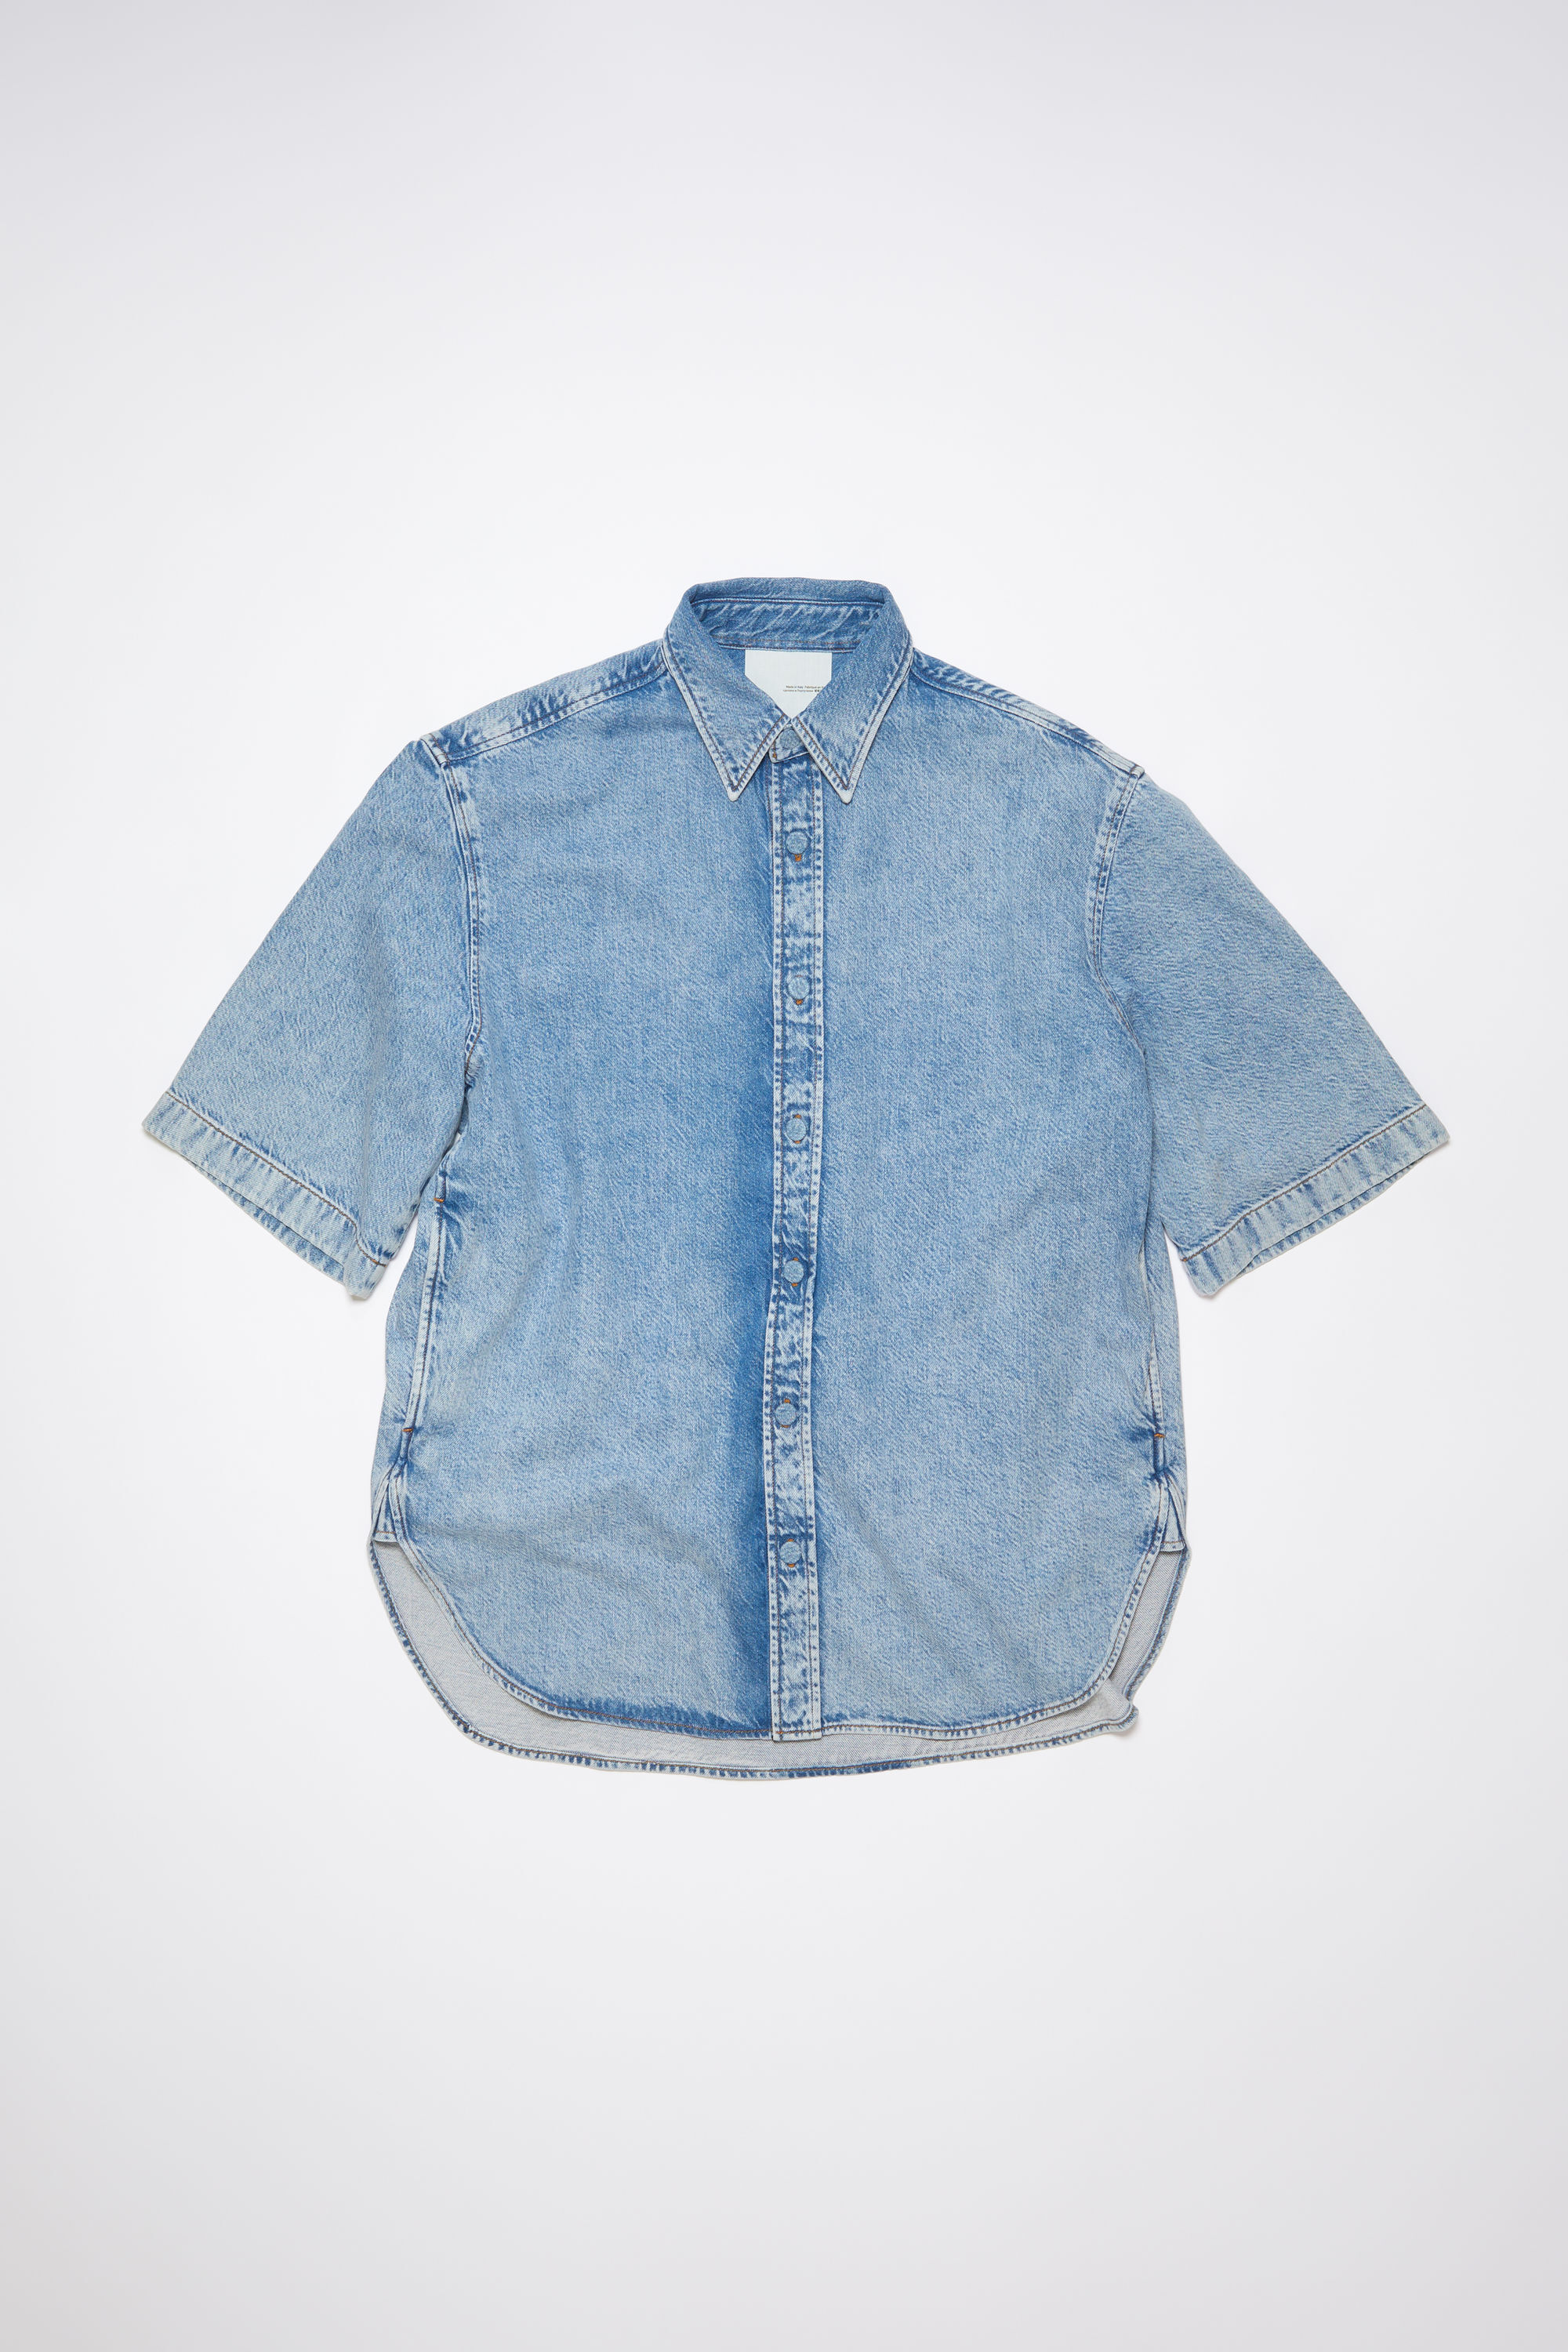 Acne Studios - Denim button-up shirt - Indigo blue